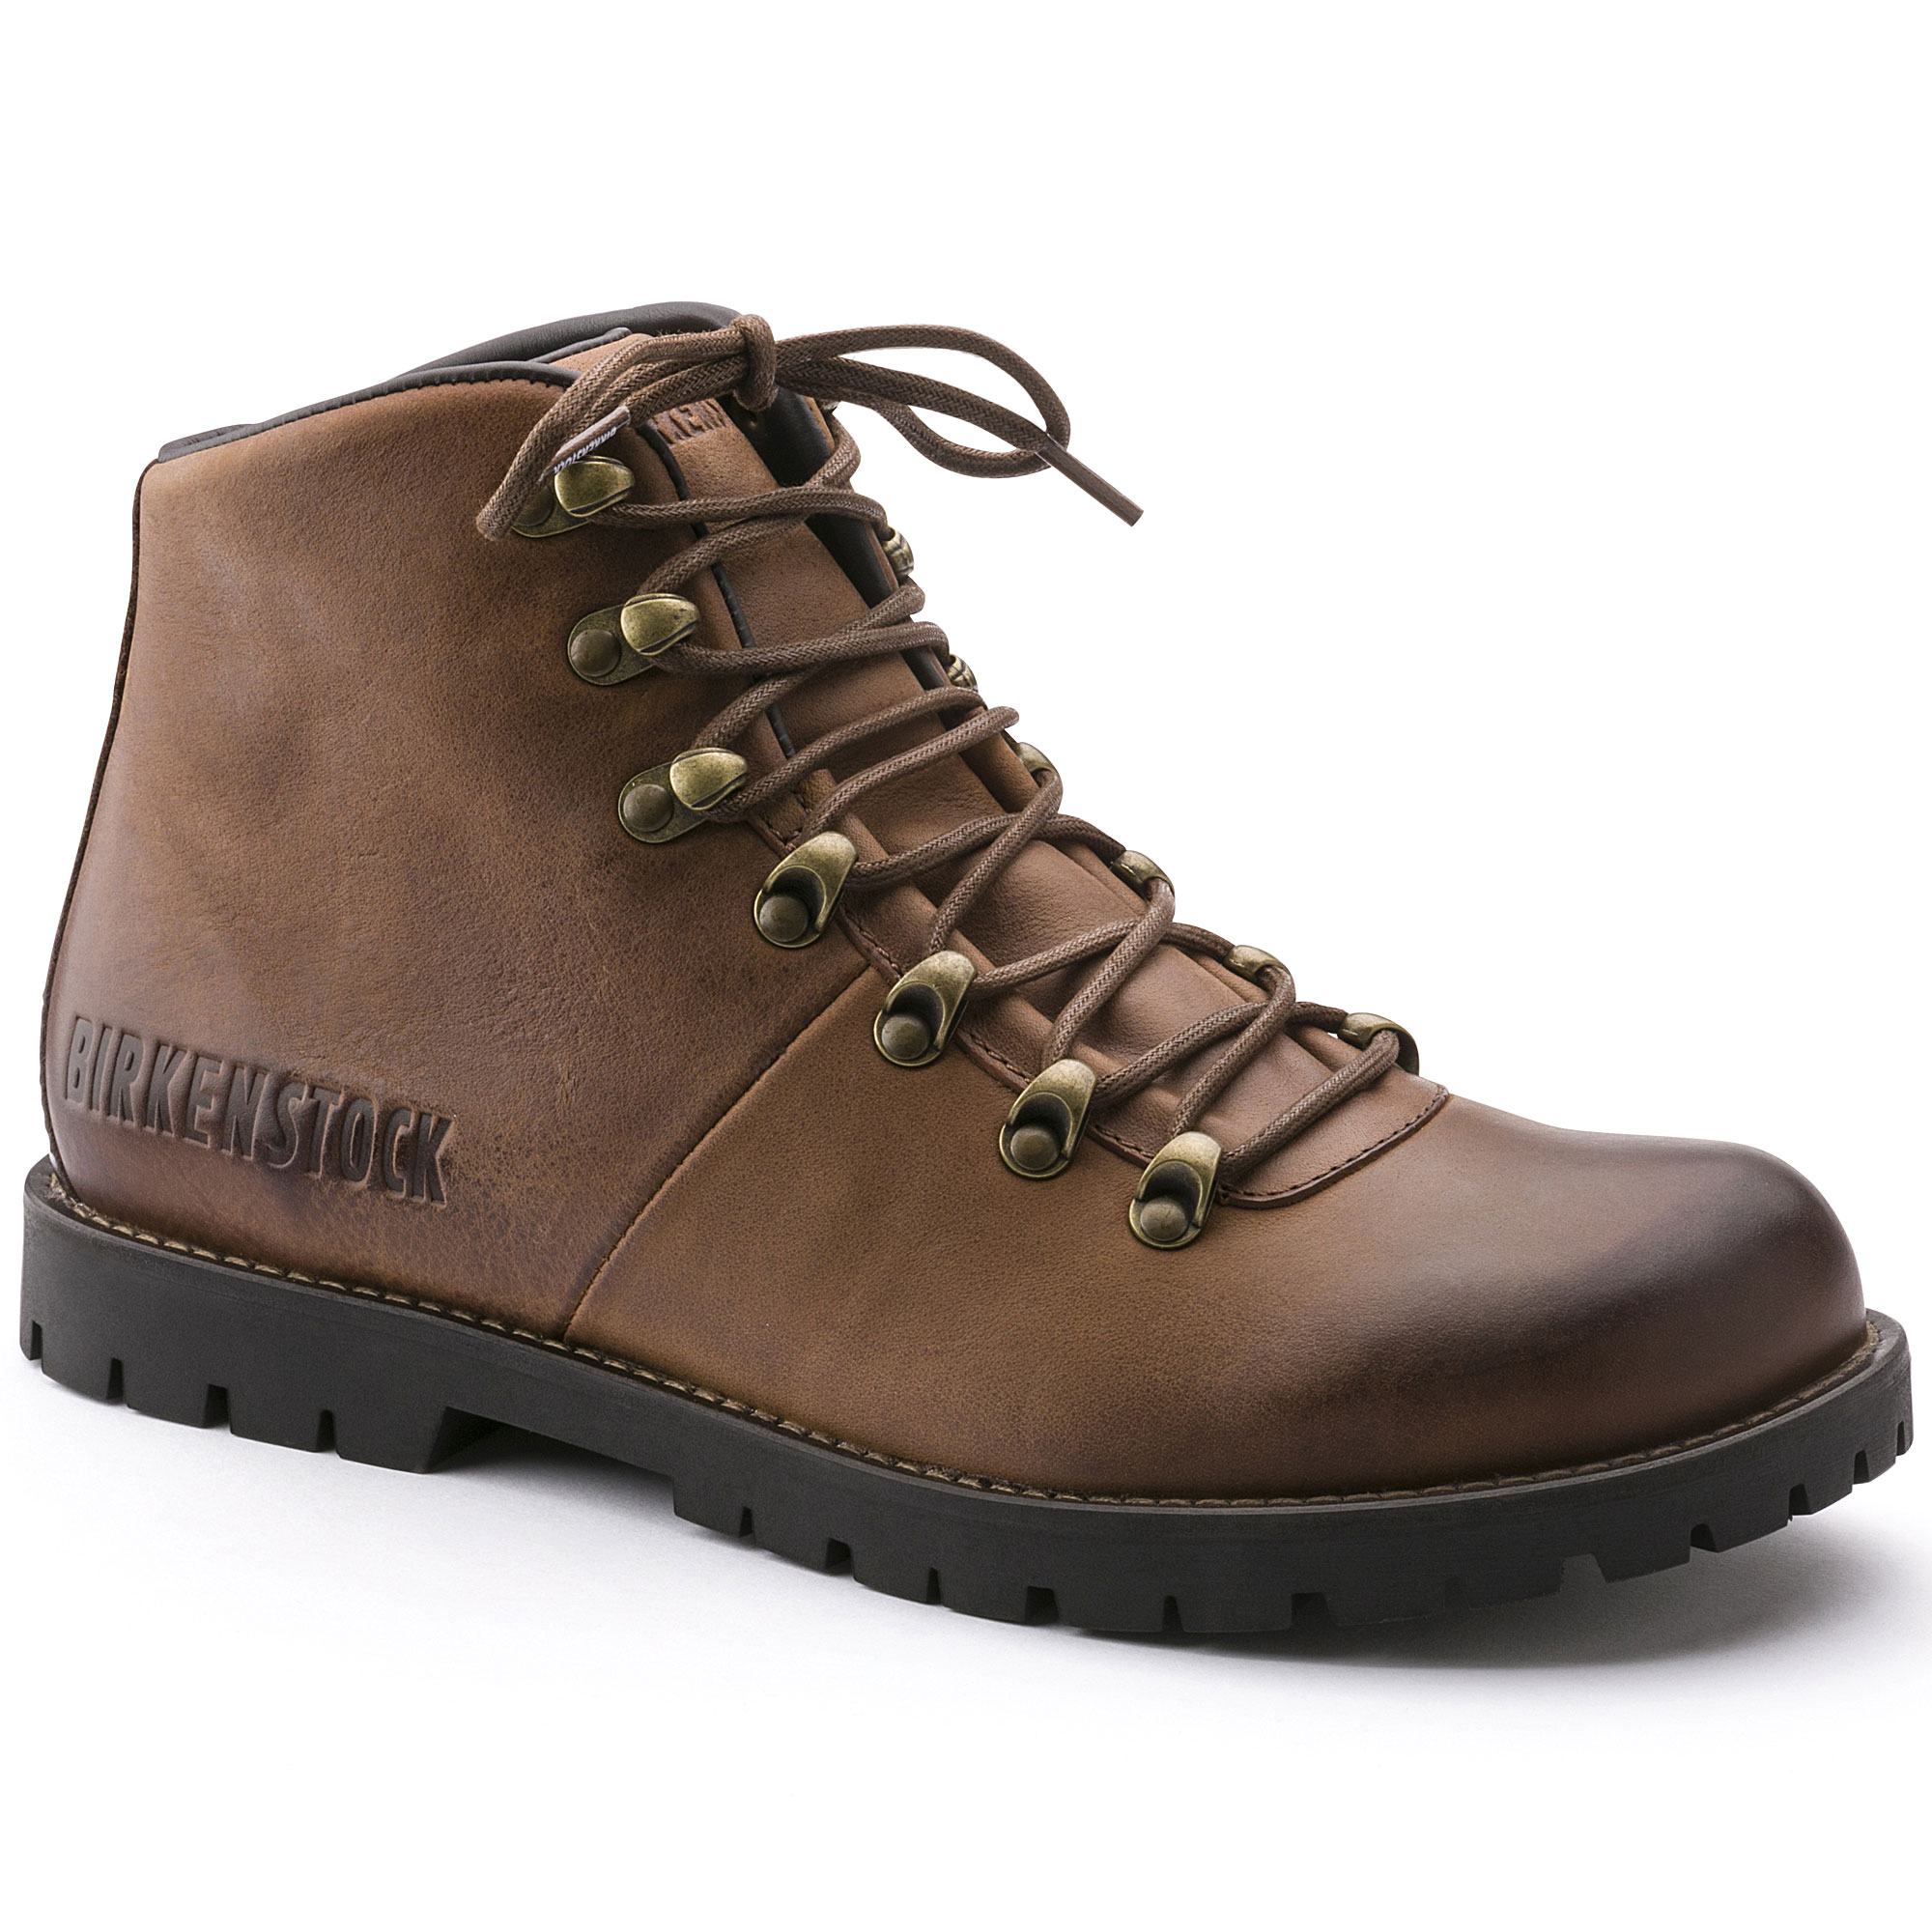 birkenstock walking boots